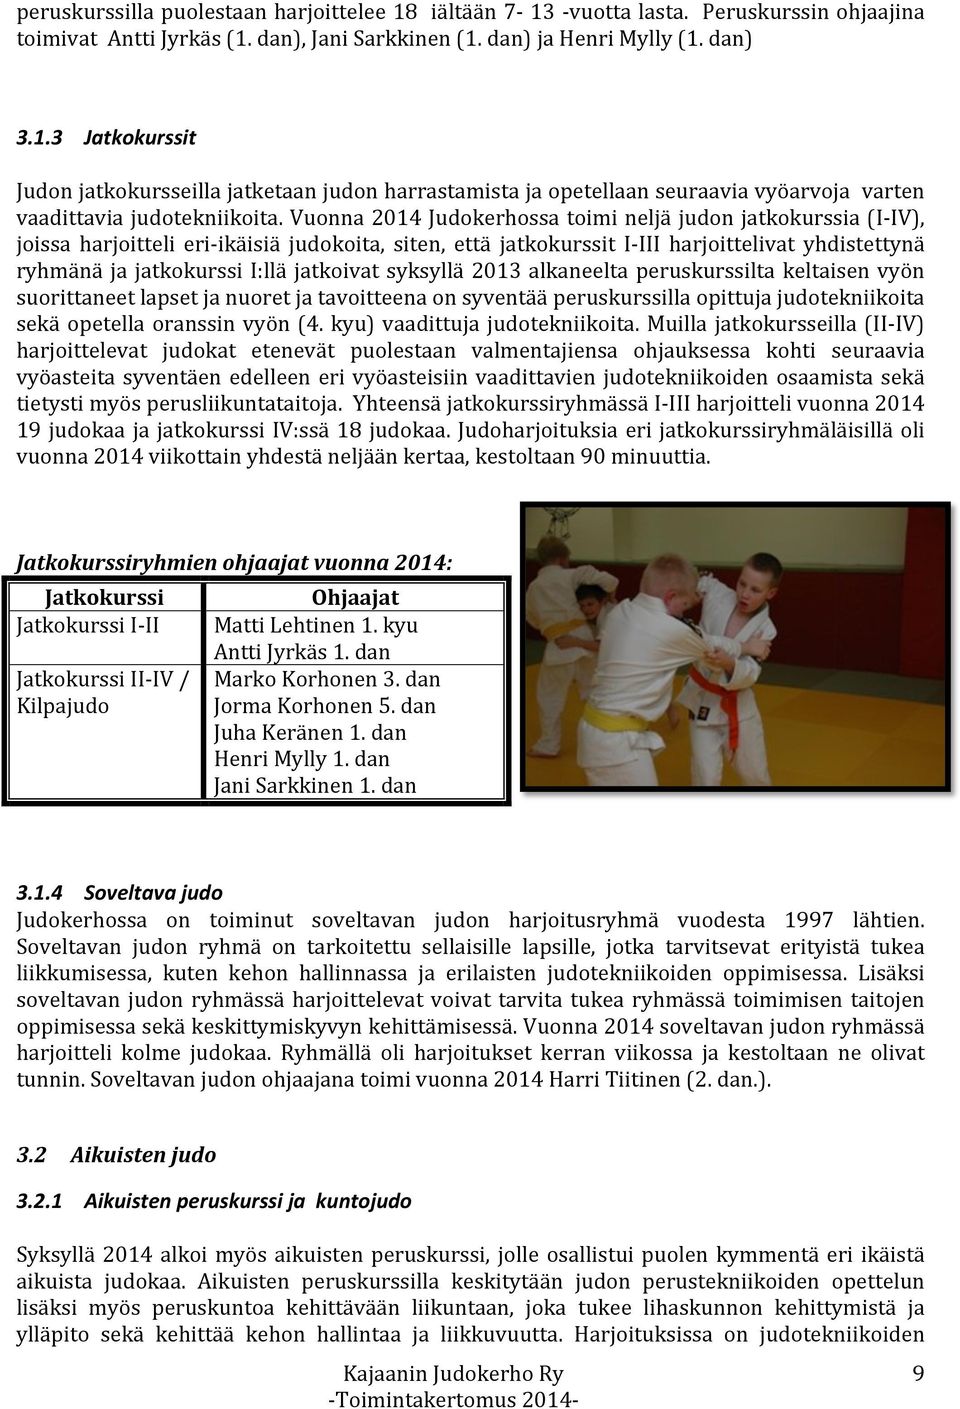 jatkoivat syksyllä 2013 alkaneelta peruskurssilta keltaisen vyön suorittaneet lapset ja nuoret ja tavoitteena on syventää peruskurssilla opittuja judotekniikoita sekä opetella oranssin vyön (4.